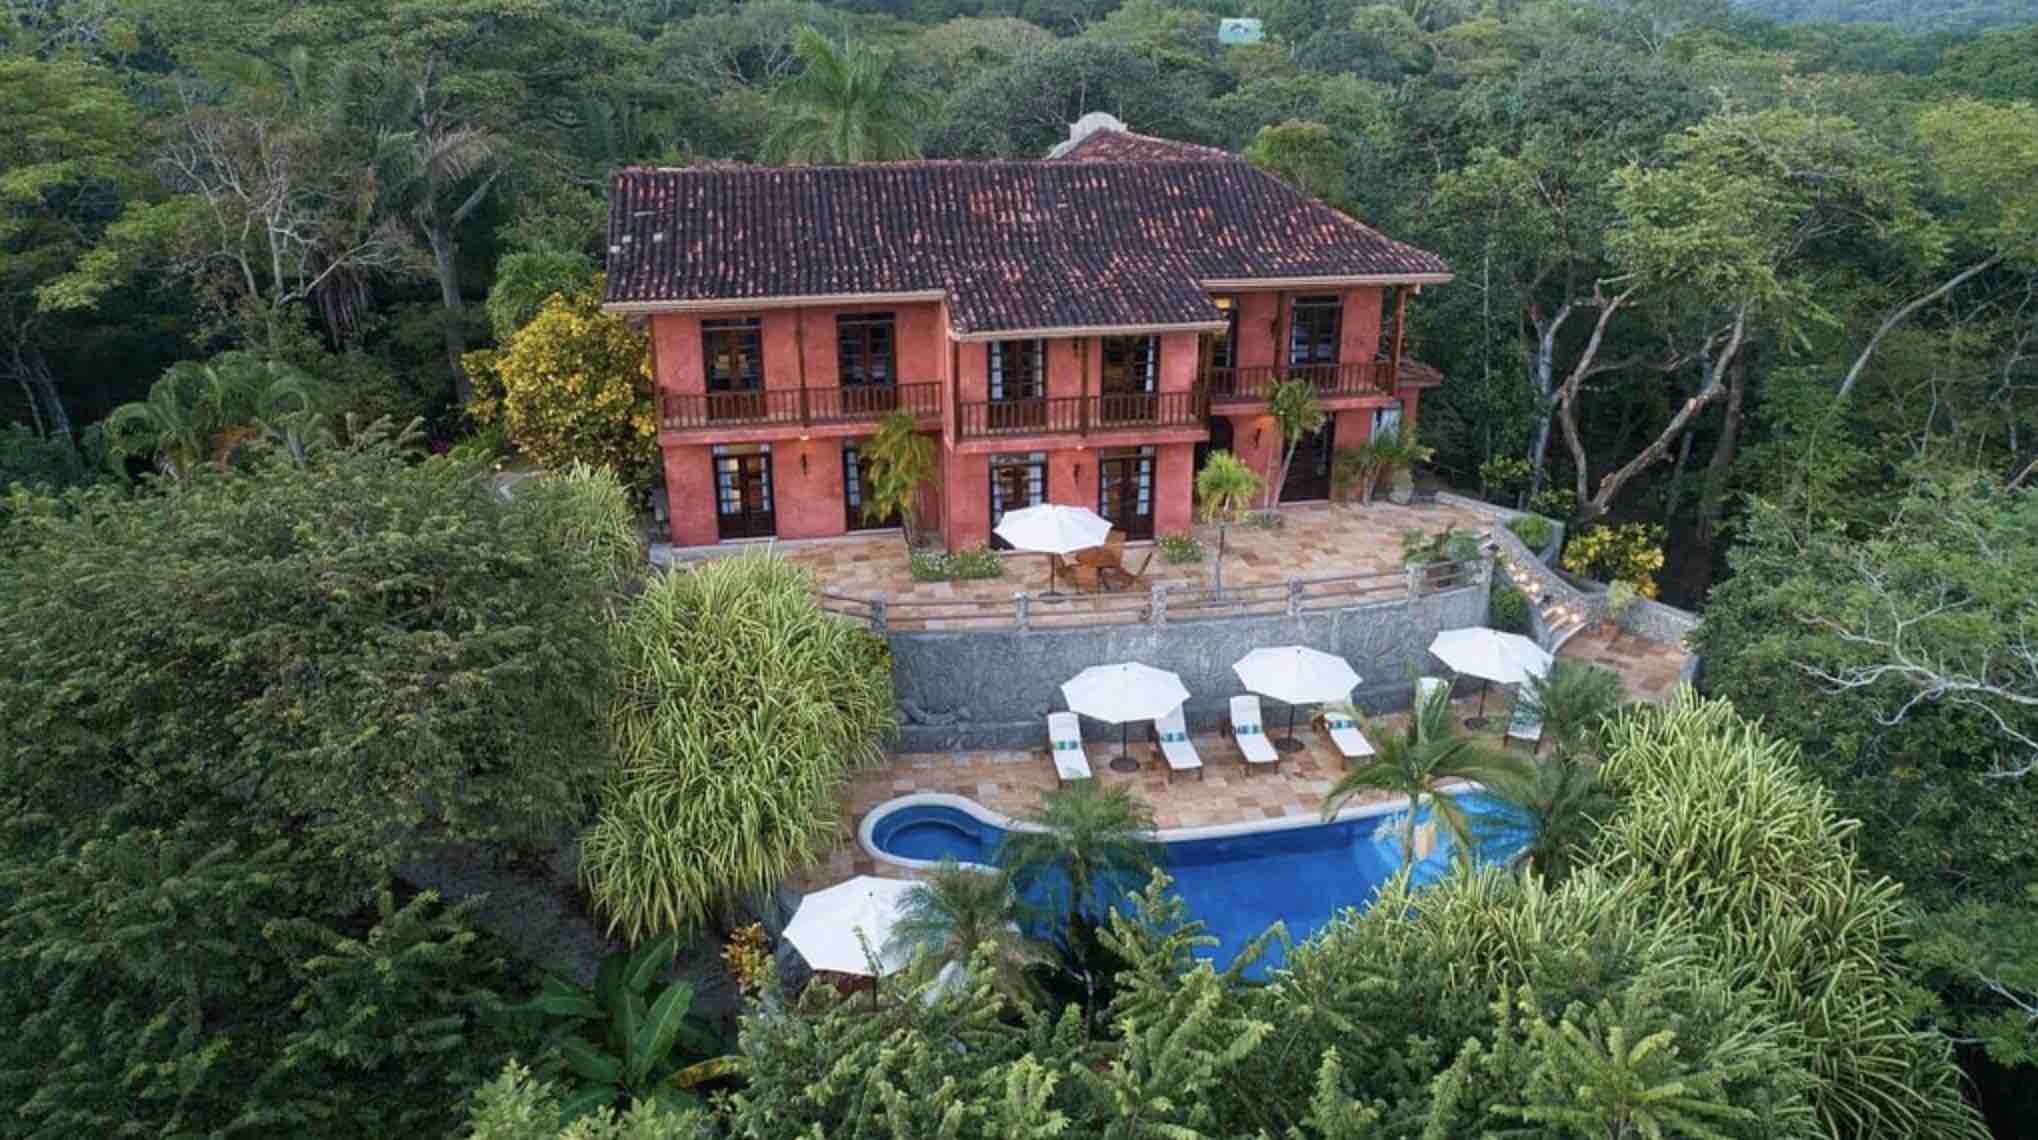 Lire la suite à propos de l’article L’Hacienda Barrigona : un refuge de détente au Costa Rica